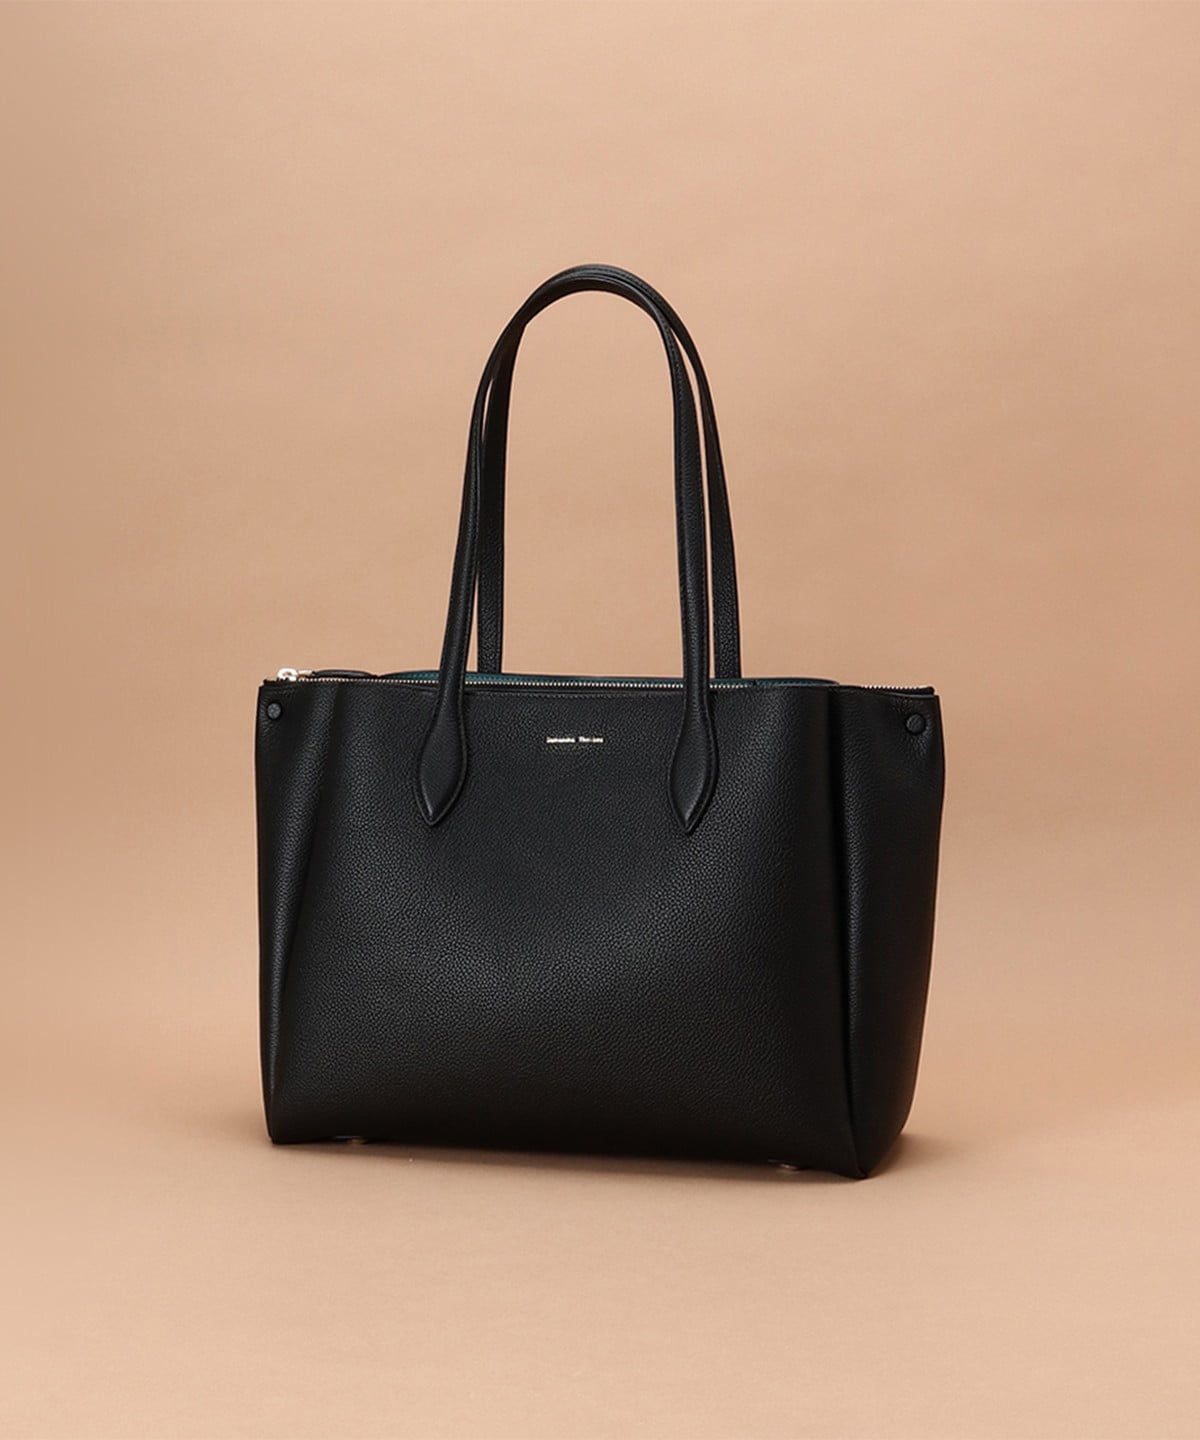 Dream bag for レザートートバッグ(FREE ブラック): Samantha Thavasaサマンサタバサ公式オンラインショップ